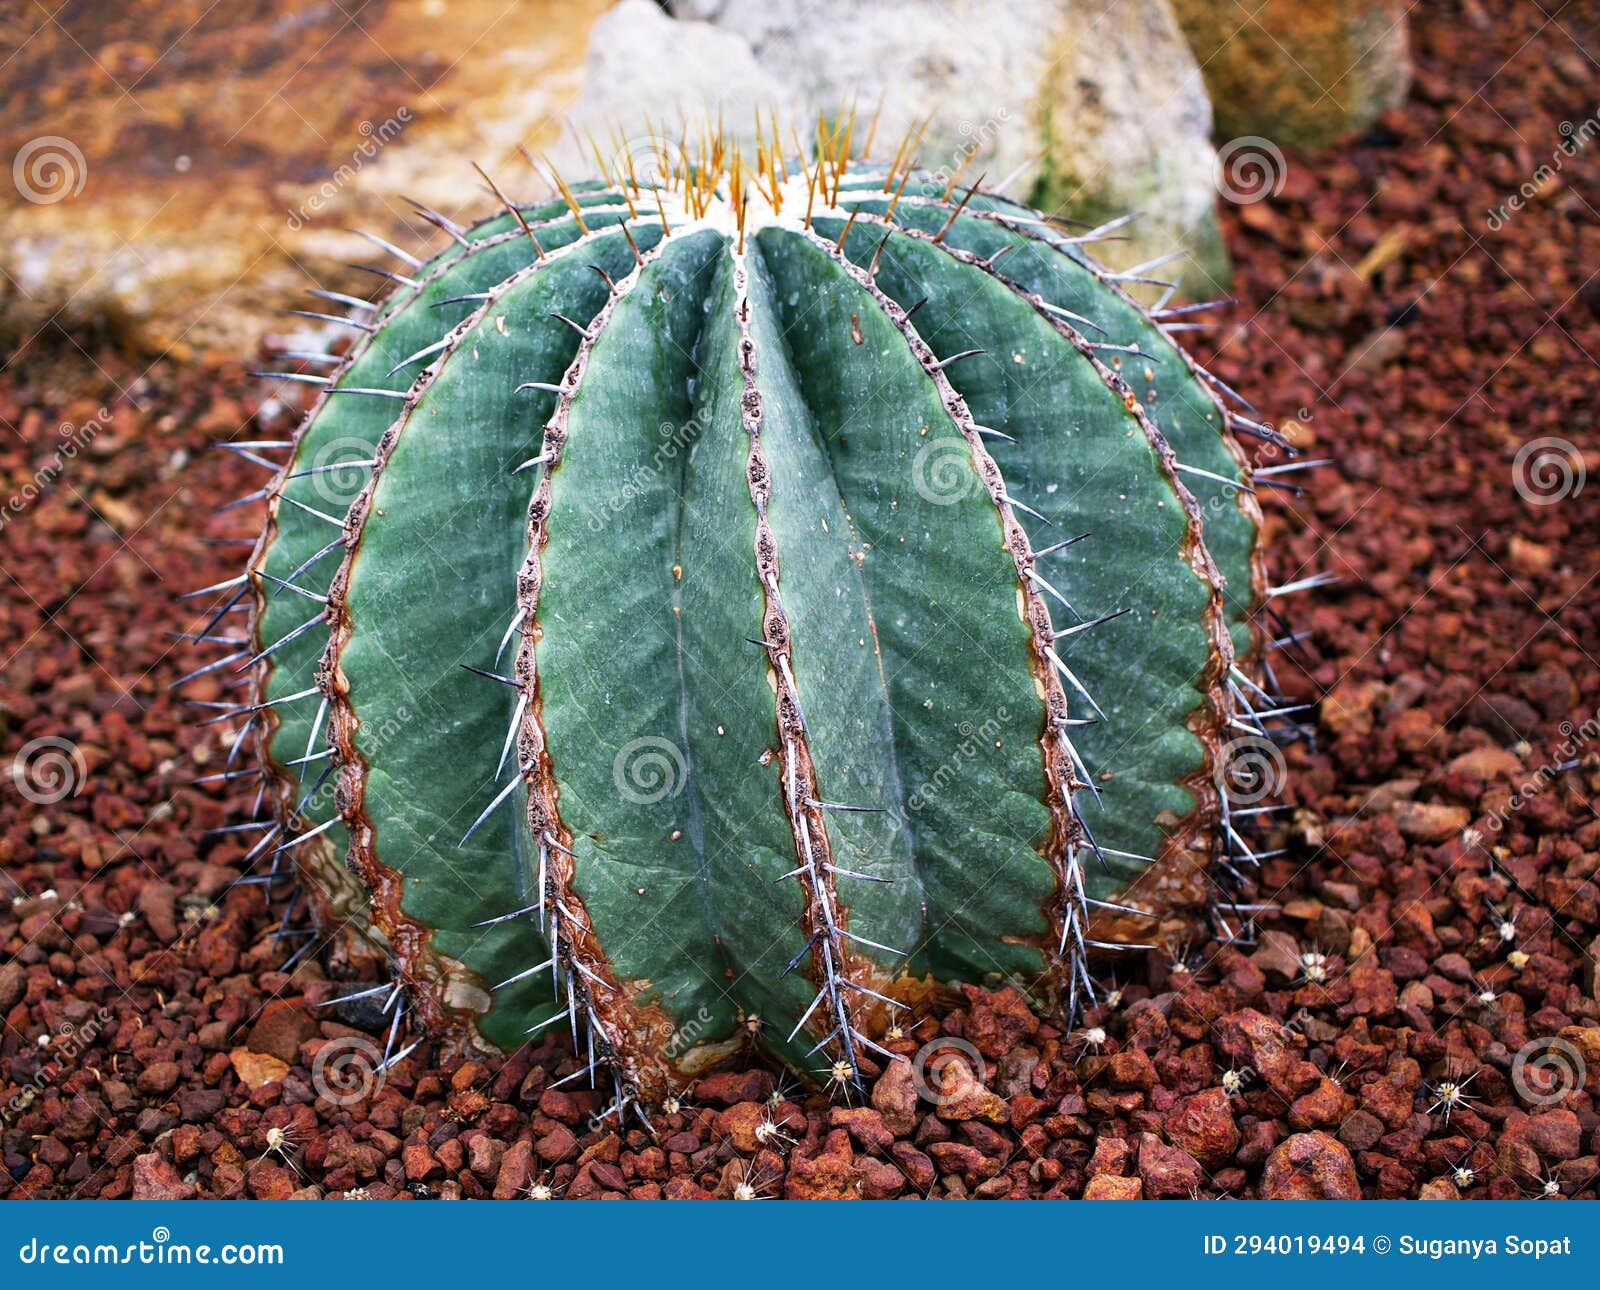 cactus ferocactus glaucescens ,glaucous barrel cactus ,ferokaktus sinewy ,blue barrel cactus in family cactaceae